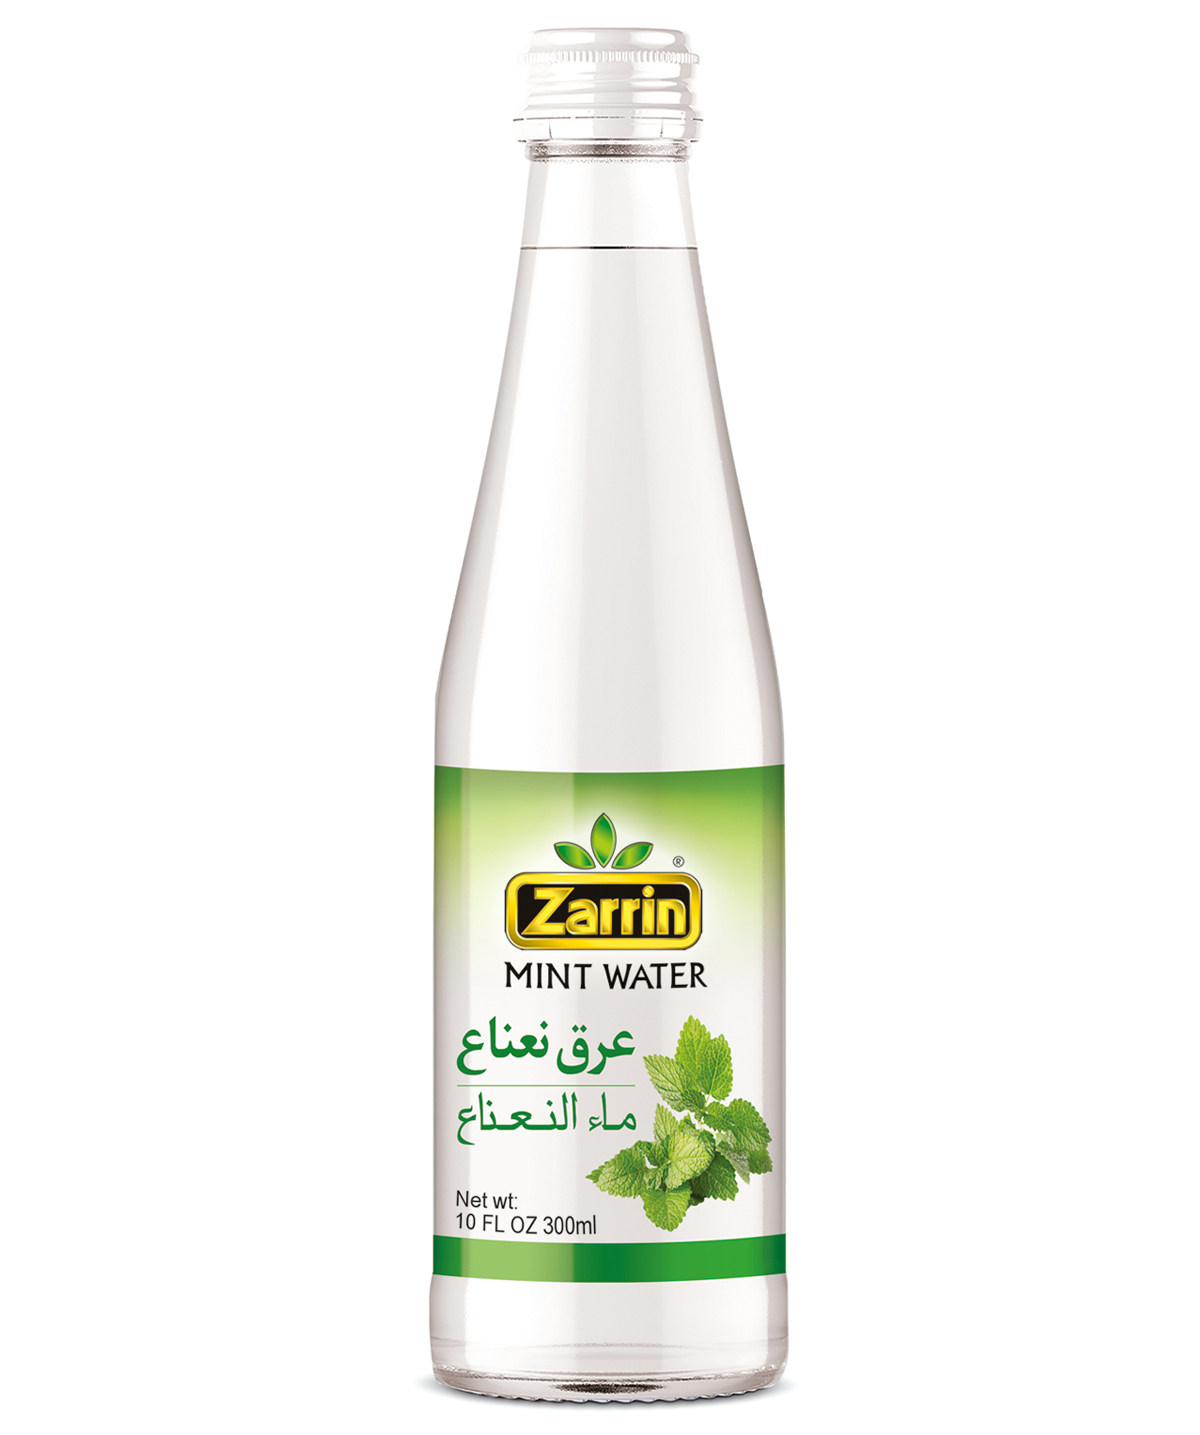 Zarrin Mint Water